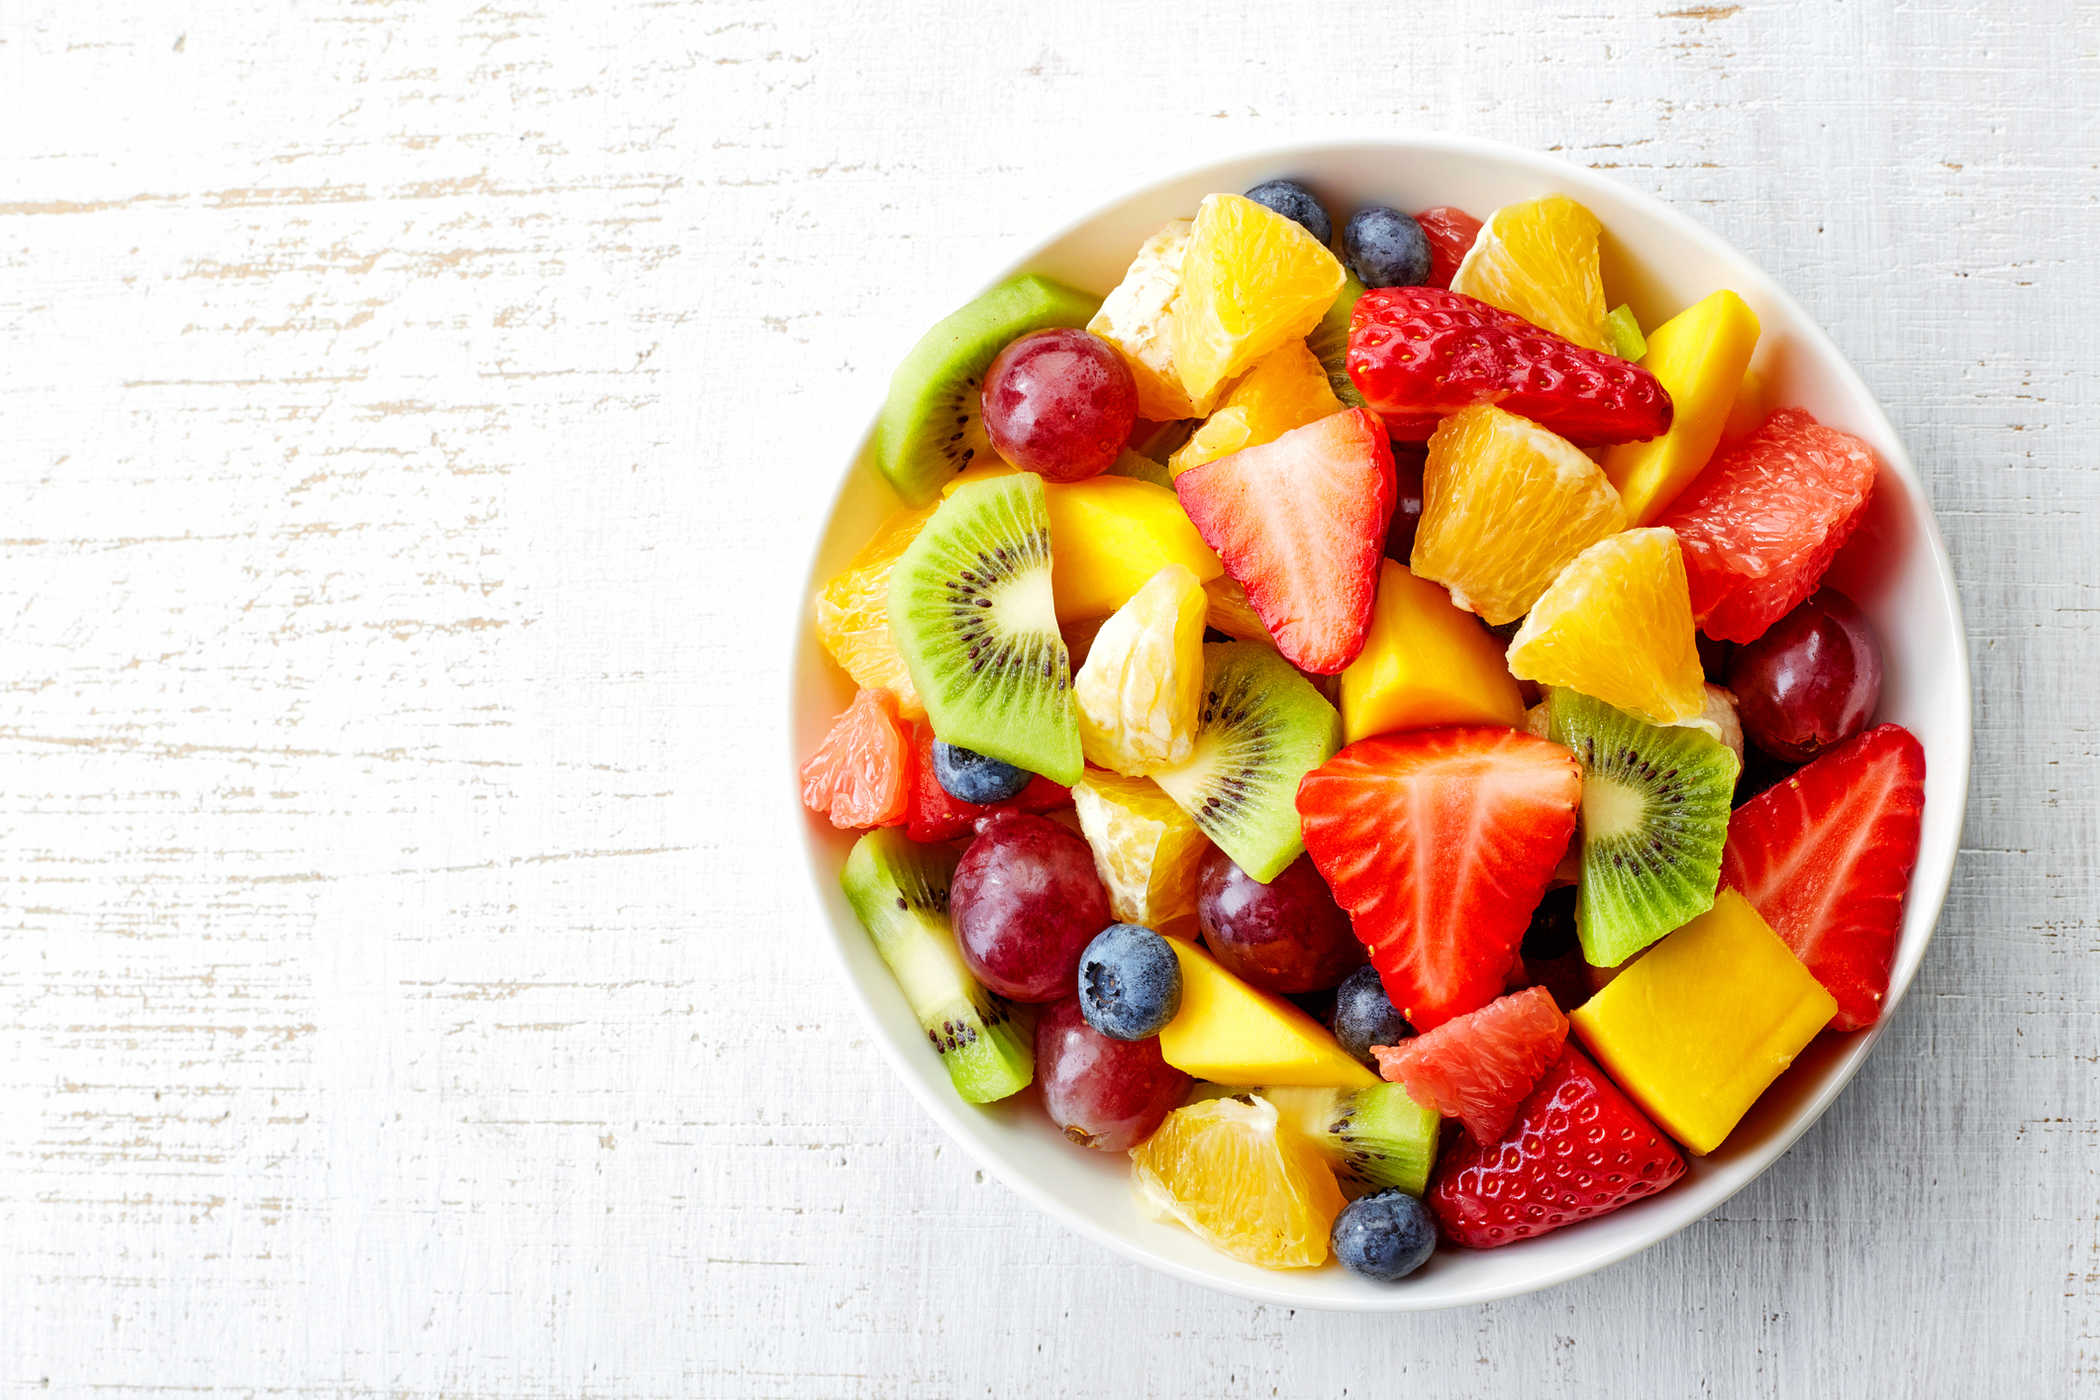 吃新鮮水果可以降低患糖尿病的風險